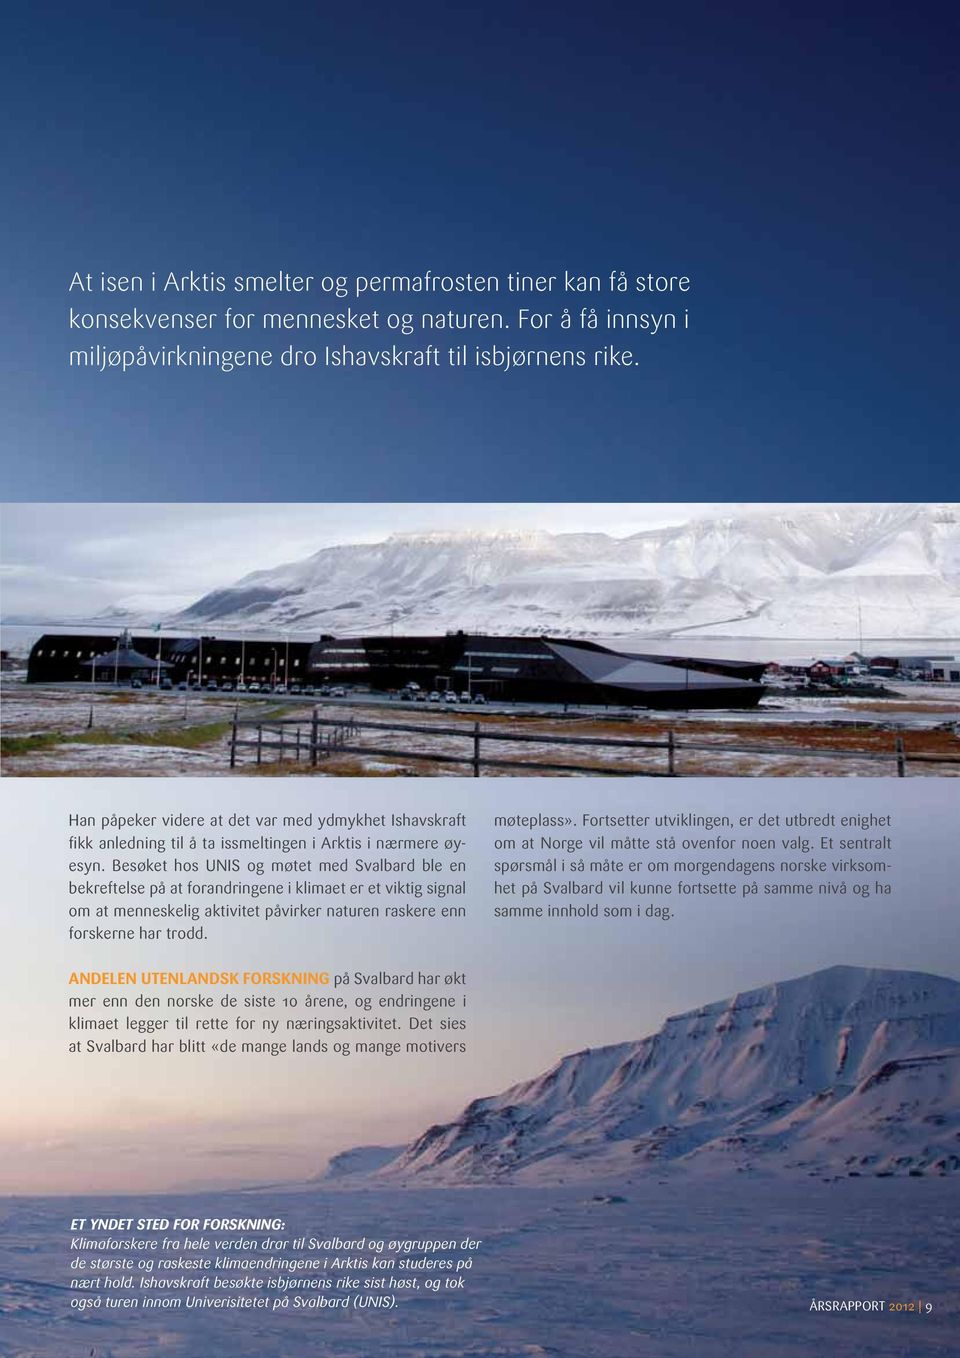 Besøket hos UNIS og møtet med Svalbard ble en bekreftelse på at forandringene i klimaet er et viktig signal om at menneskelig aktivitet påvirker naturen raskere enn forskerne har trodd. møteplass».